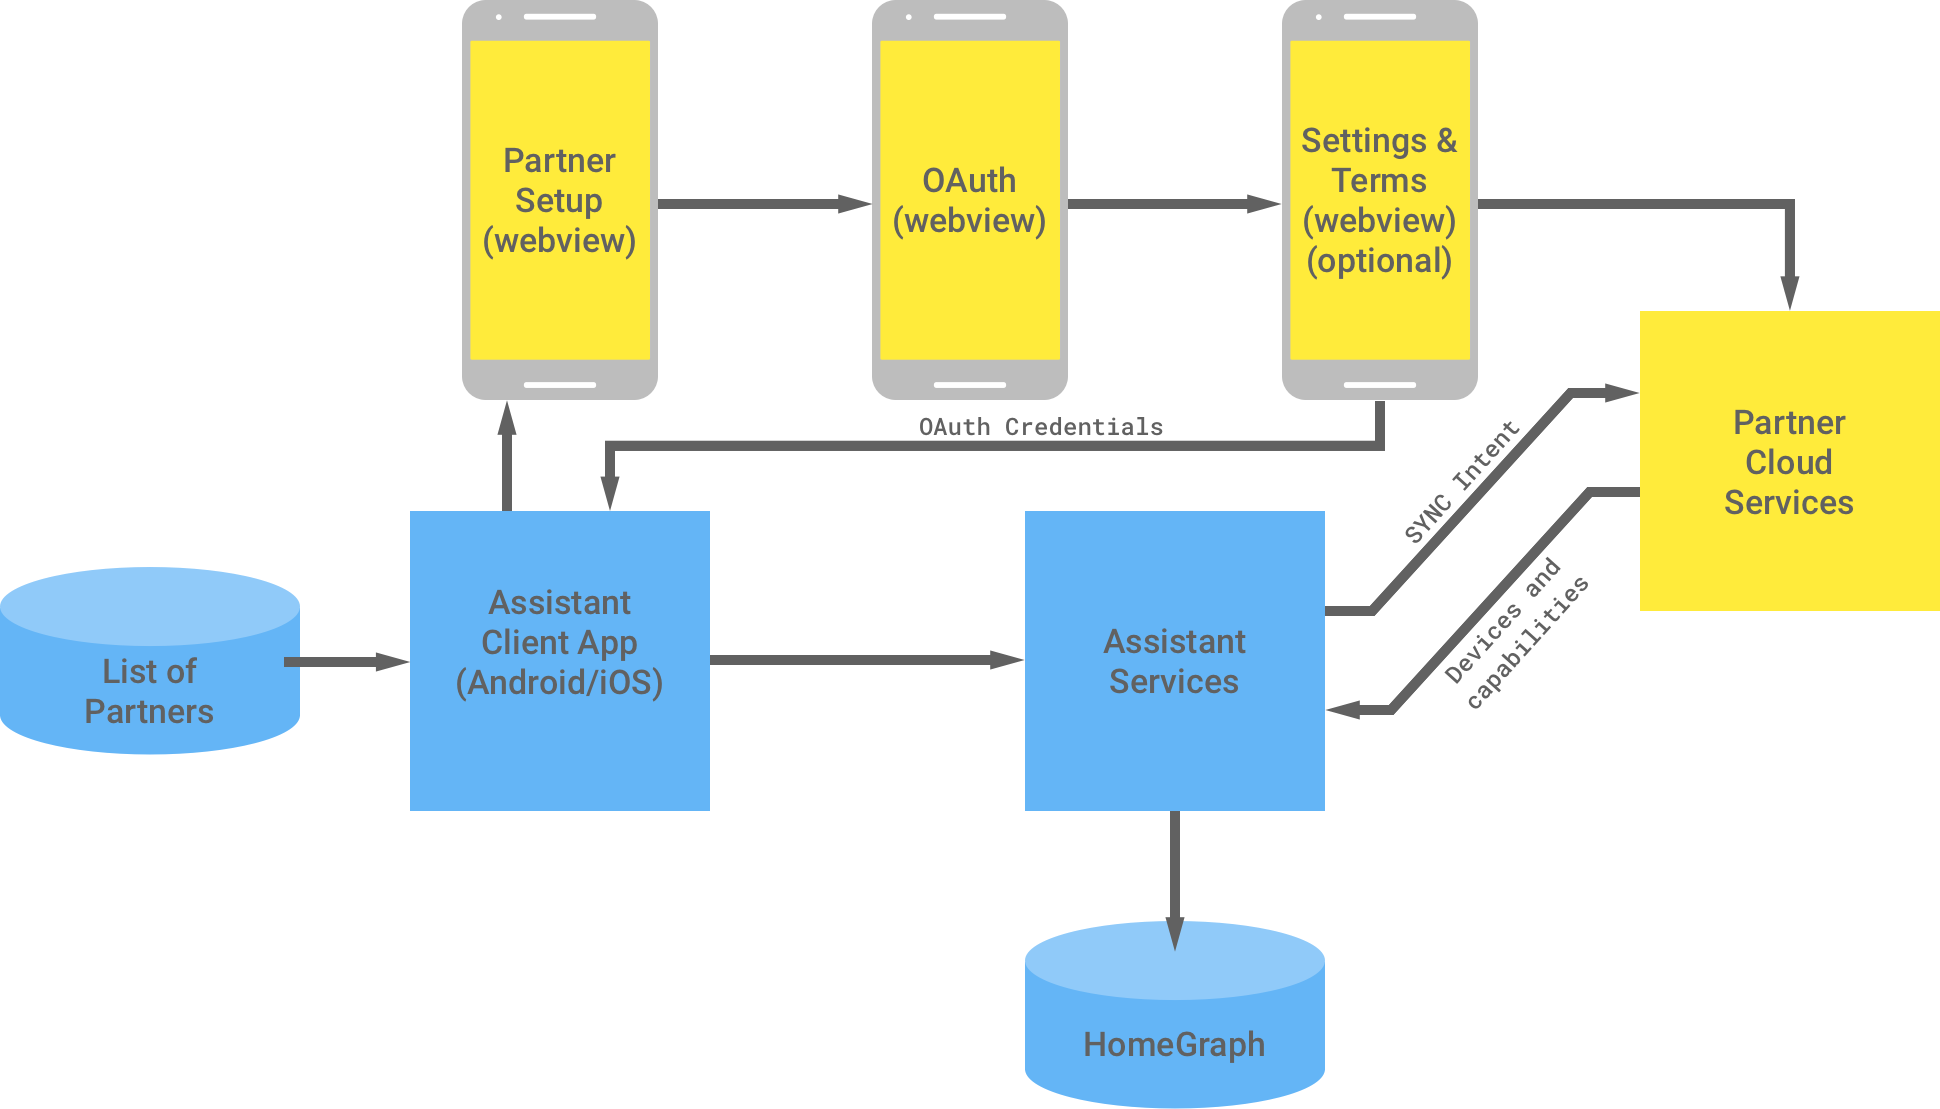 Ten rysunek przedstawia interakcję między infrastrukturą Google a infrastrukturą partnera. W infrastrukturze Google znajduje się lista partnerów dostępnych dla aplikacji klienckiej Asystenta. Następnie jest ona przesyłana do infrastruktury partnera w celu przeprowadzenia uwierzytelniania OAuth. Uwierzytelnianie OAuth po stronie partnera obejmuje konfigurację komponentu WebView, OAuth WebView, opcjonalne ustawienia i warunki oraz usługi chmurowe partnera. Infrastruktura partnera zwraca dane logowania OAuth do aplikacji klienckiej Asystenta. Usługi w chmurze partnera wysyłają dostępne urządzenia i funkcje do usług Asystenta, które następnie zapisują informacje w Home Graph.